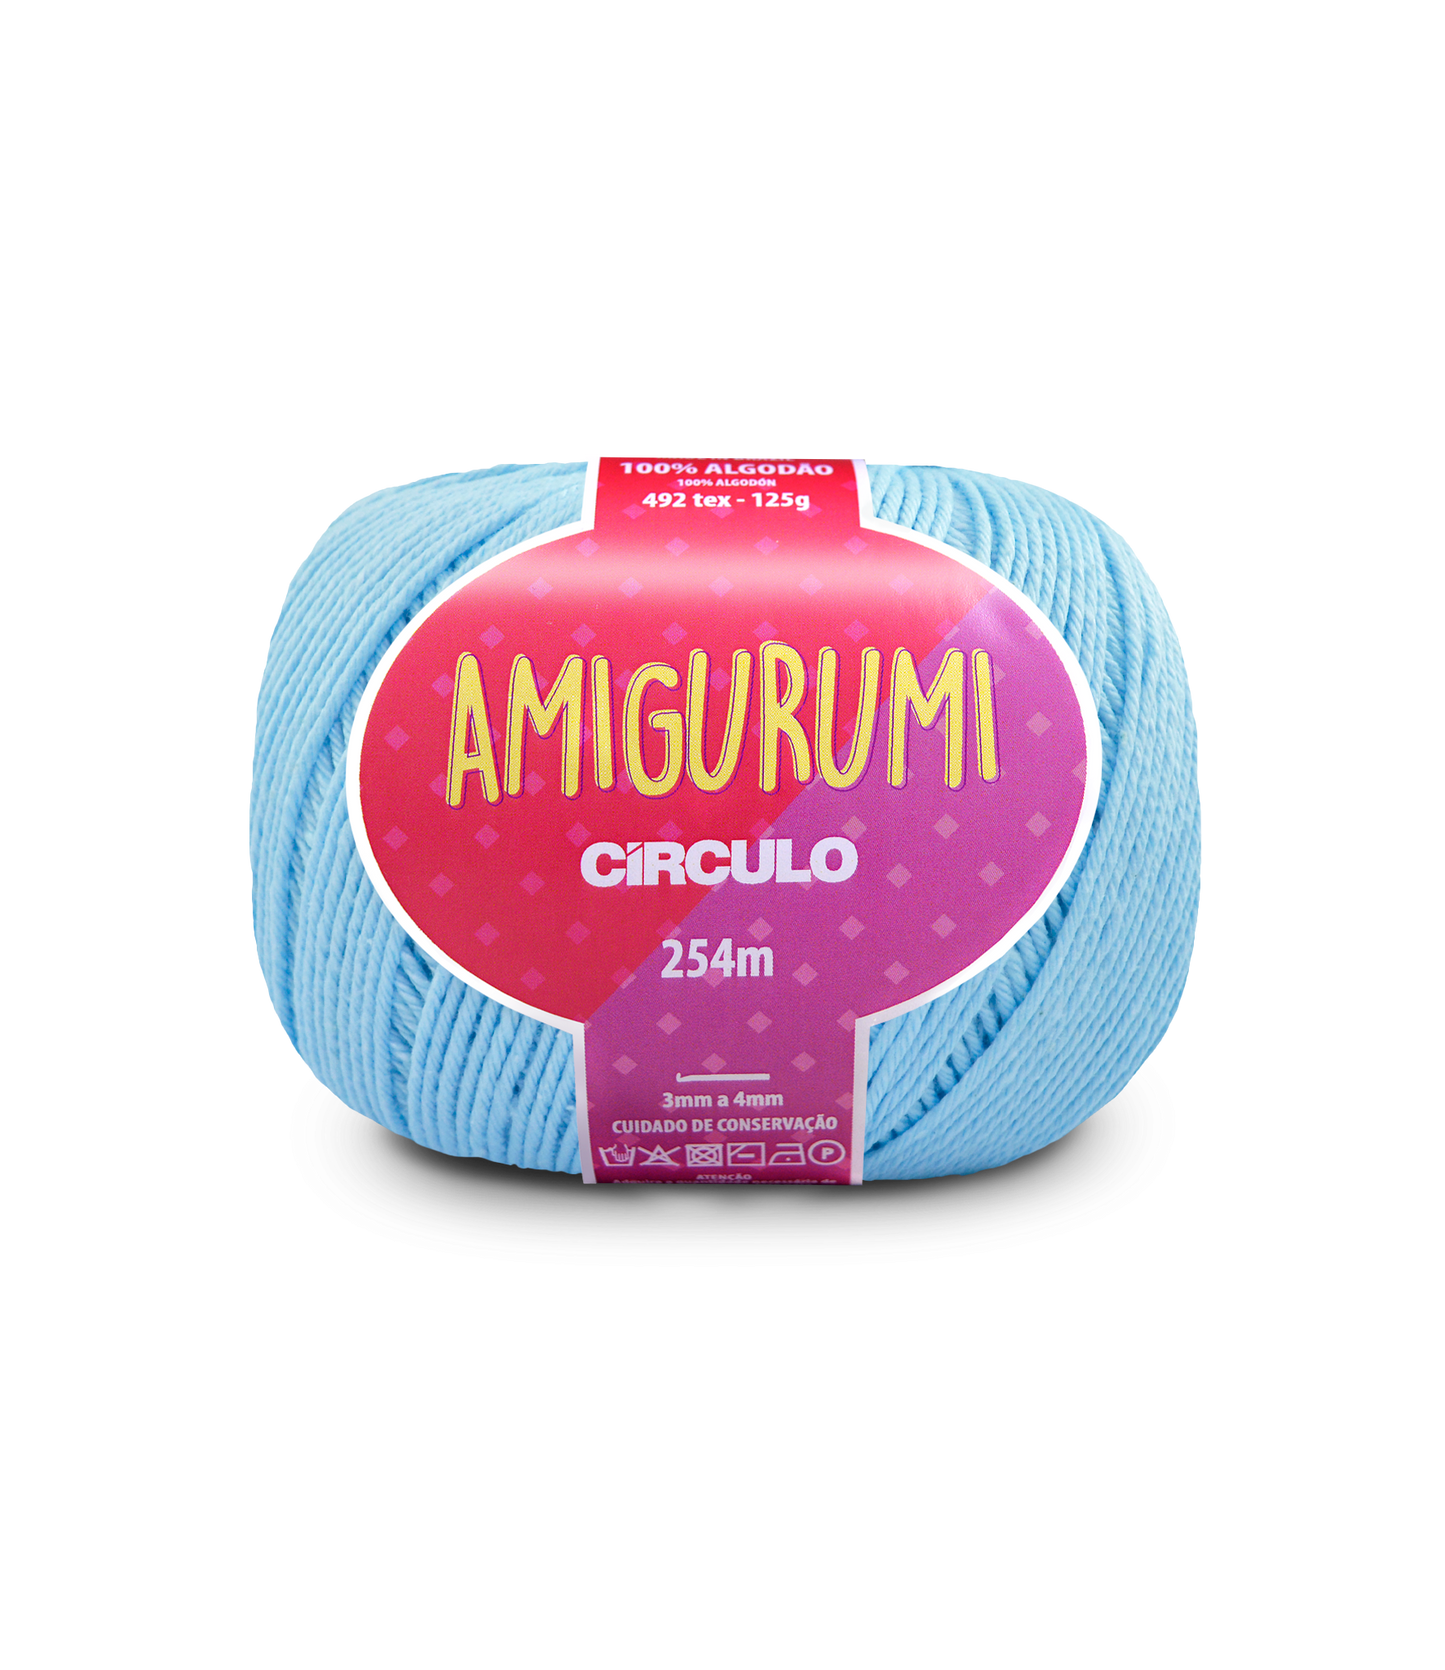 Circulo AMIGURUMI (EXP) 100% Cotton Yarn Candy Blue Color (363162-2012)